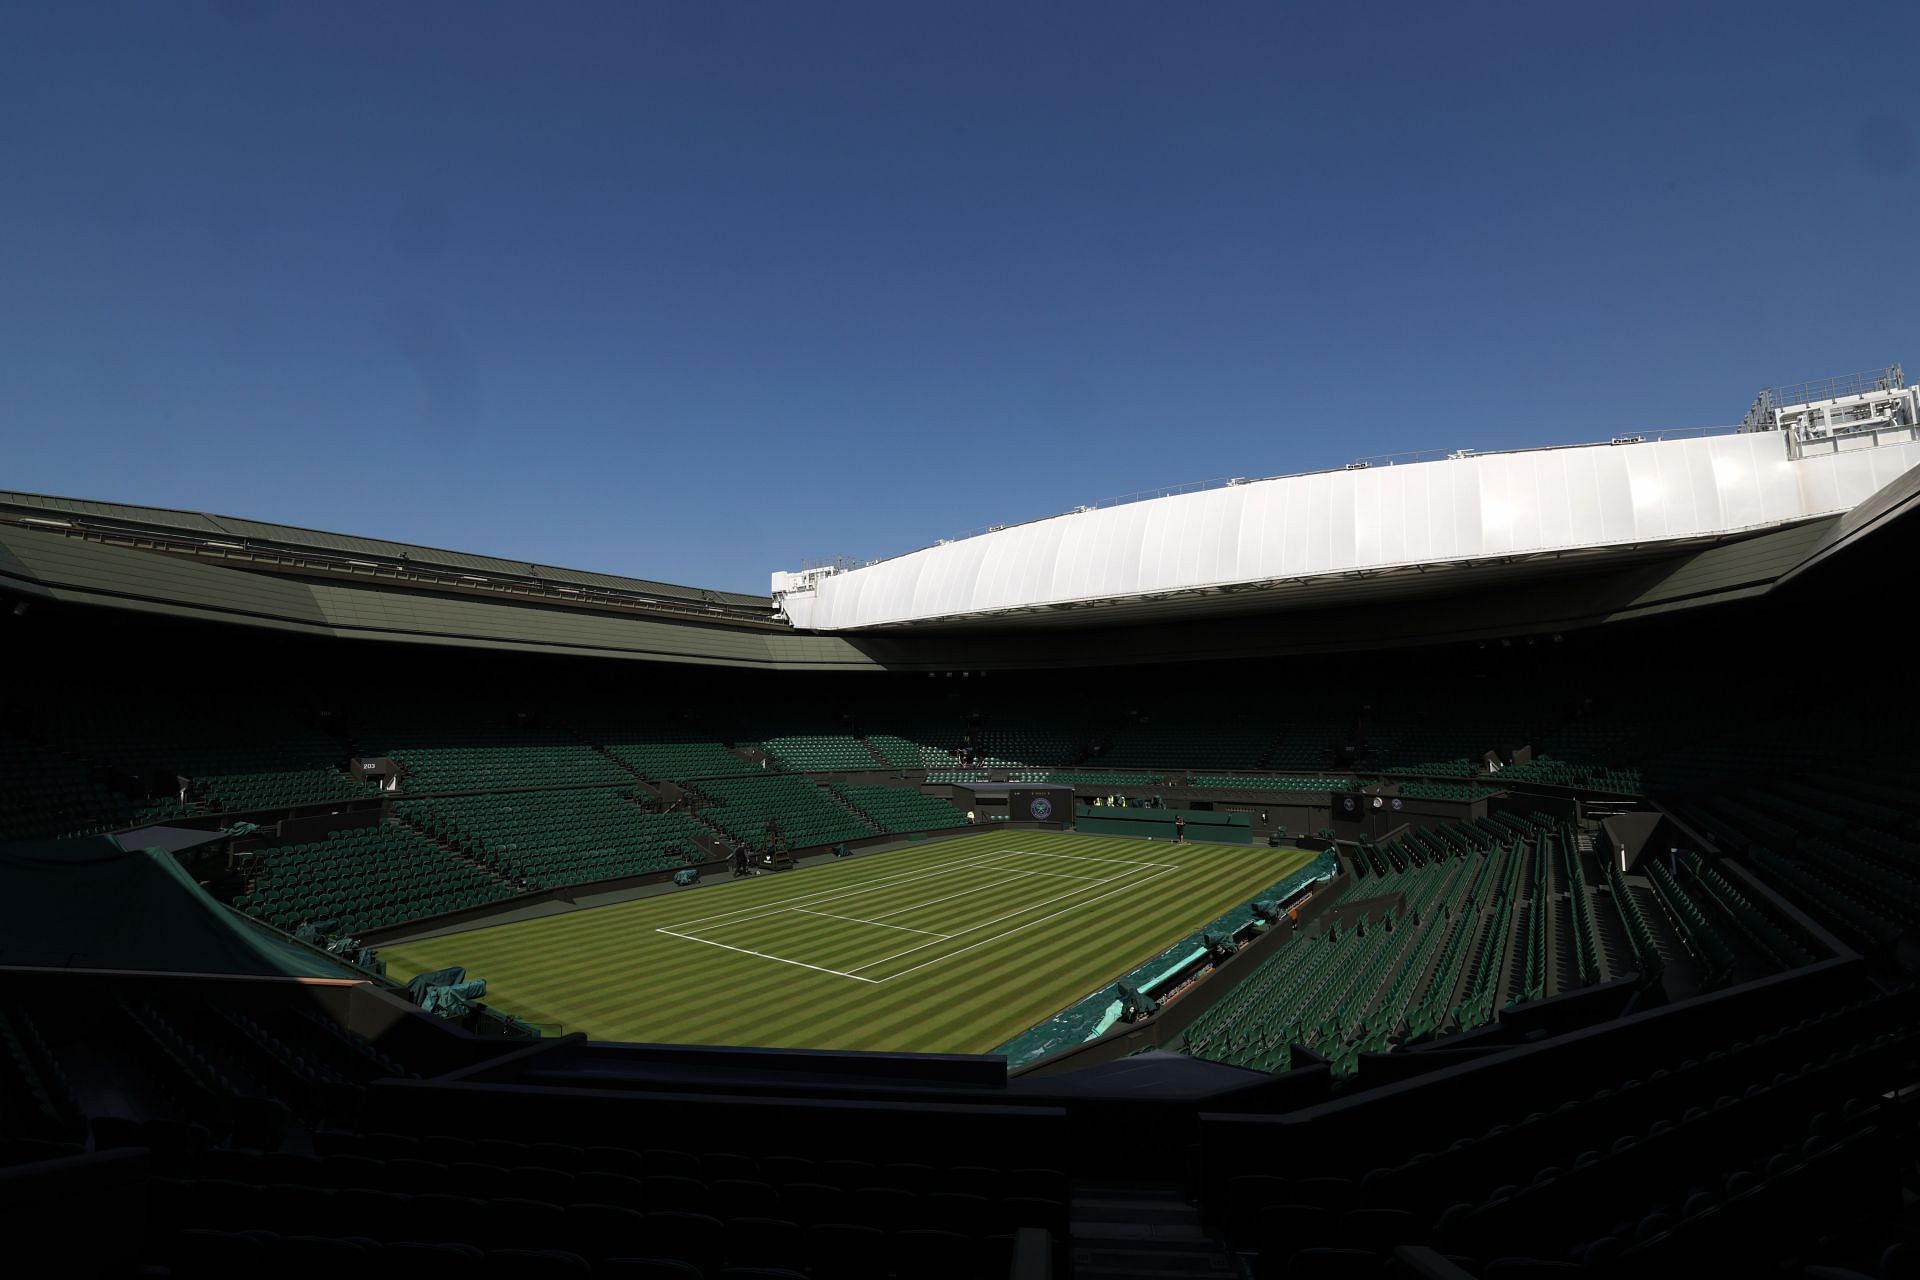 Wimbledon Center Court